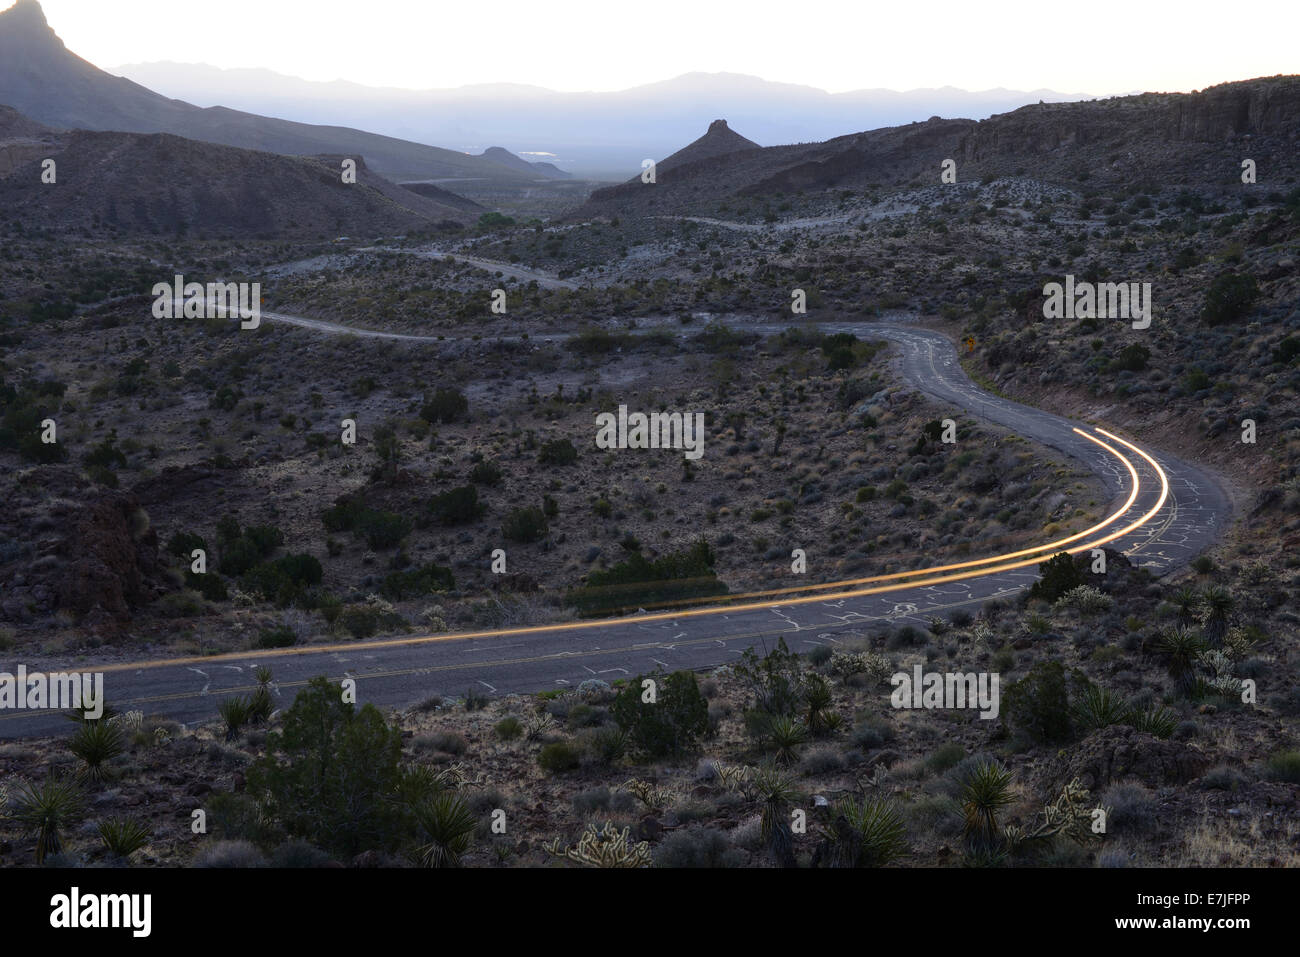 Stati Uniti d'America, Stati Uniti, America, Arizona, Route 66, Oatman, Sitgrave Pass, deserto, strada, traffico, luci, Foto Stock